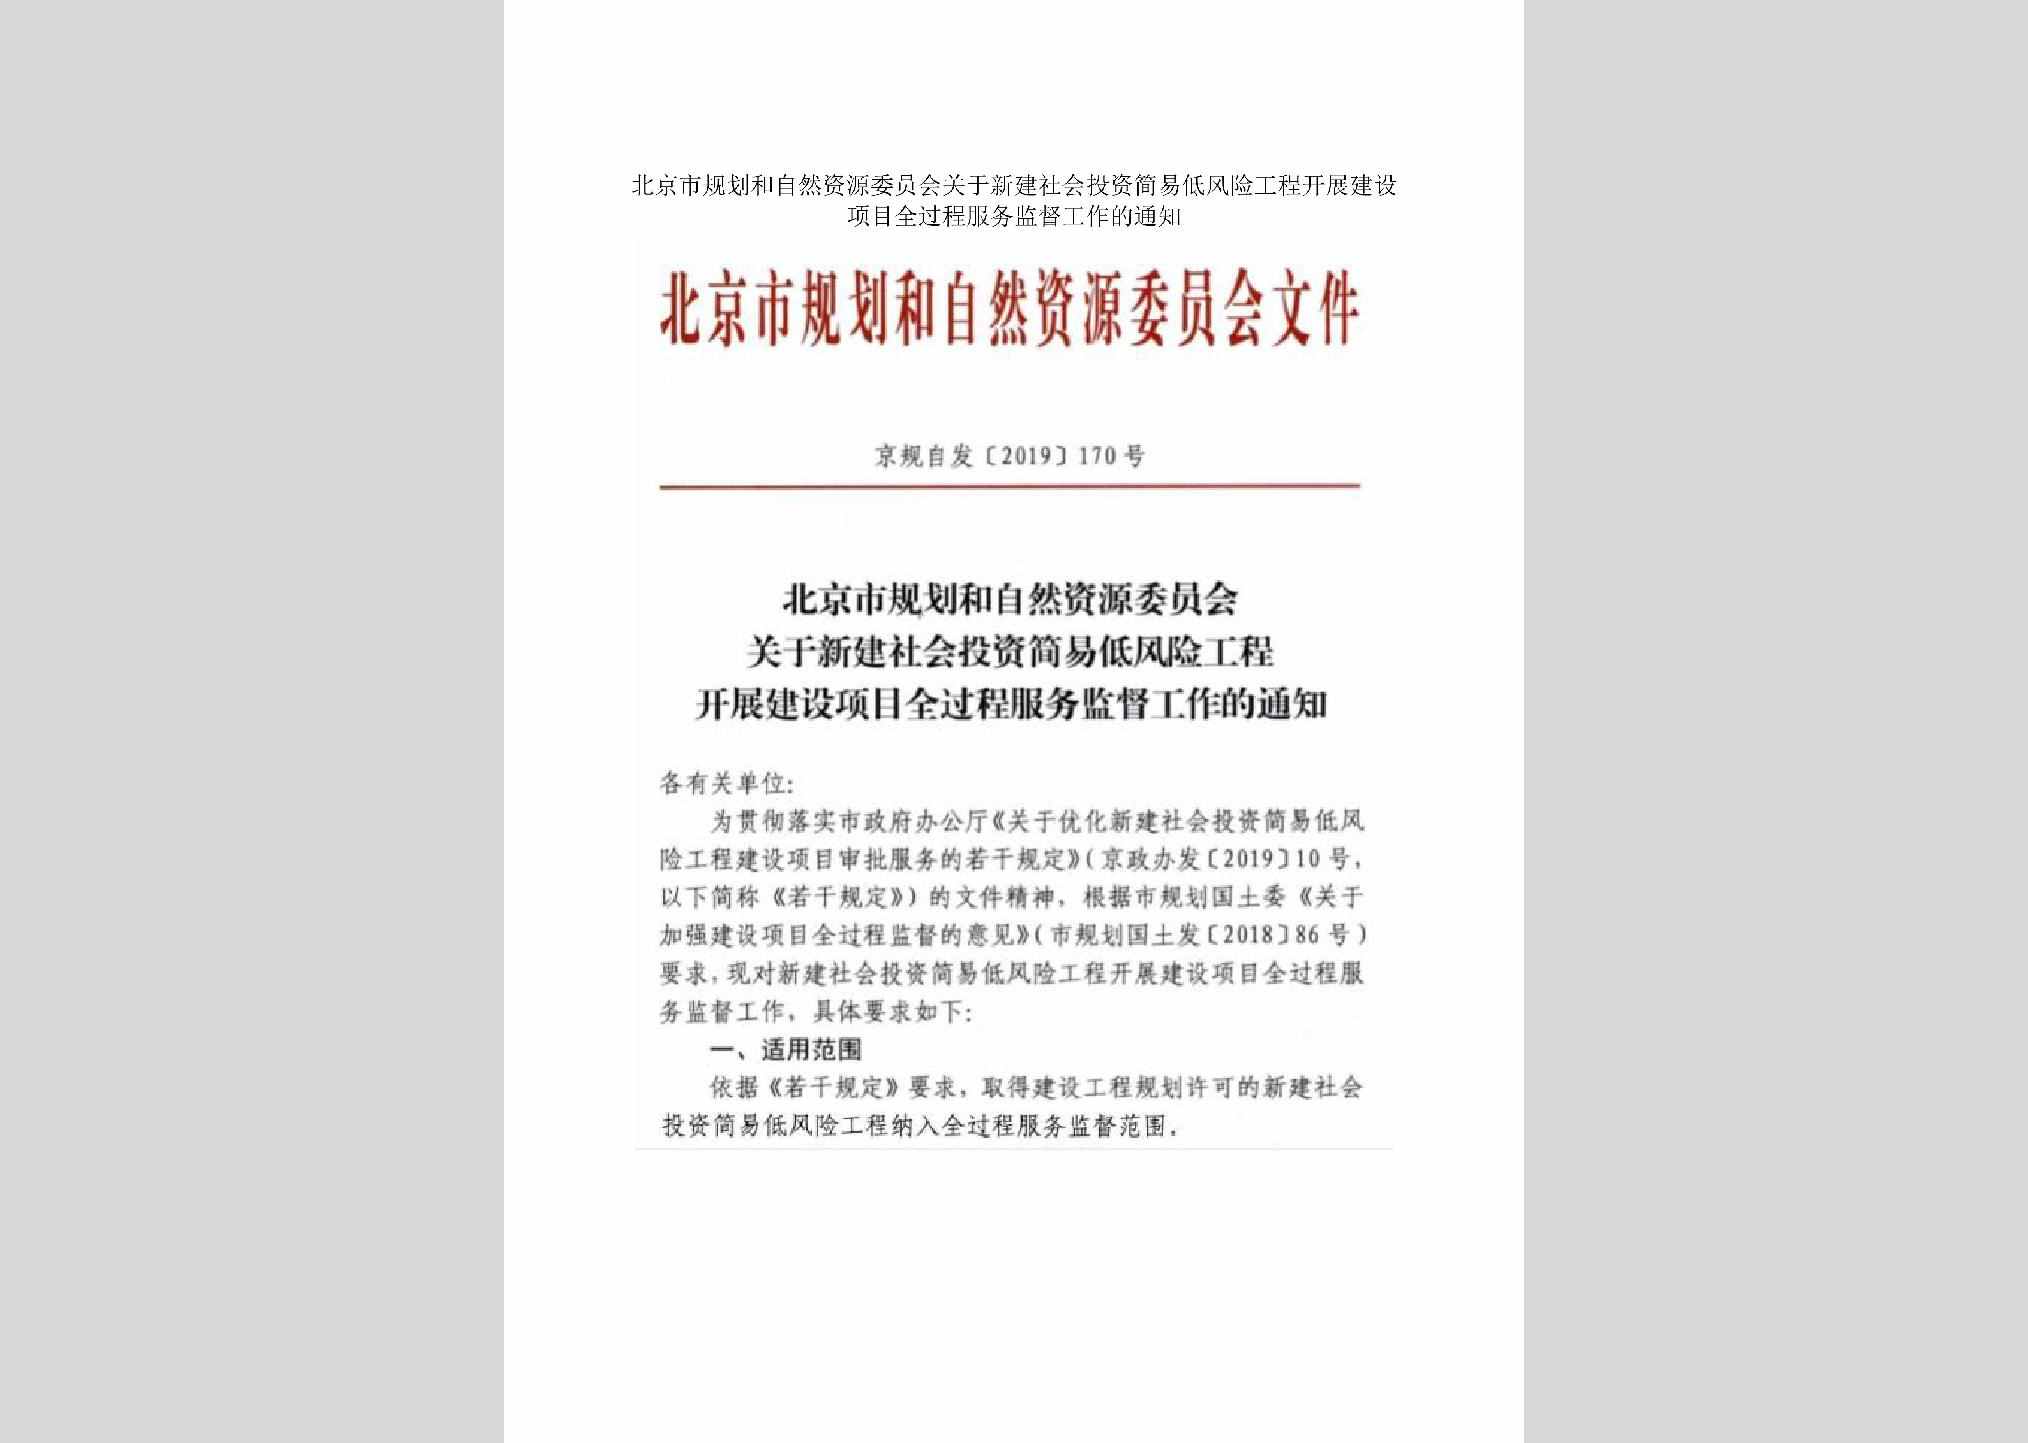 京规自发[2019]170号：北京市规划和自然资源委员会关于新建社会投资简易低风险工程开展建设项目全过程服务监督工作的通知